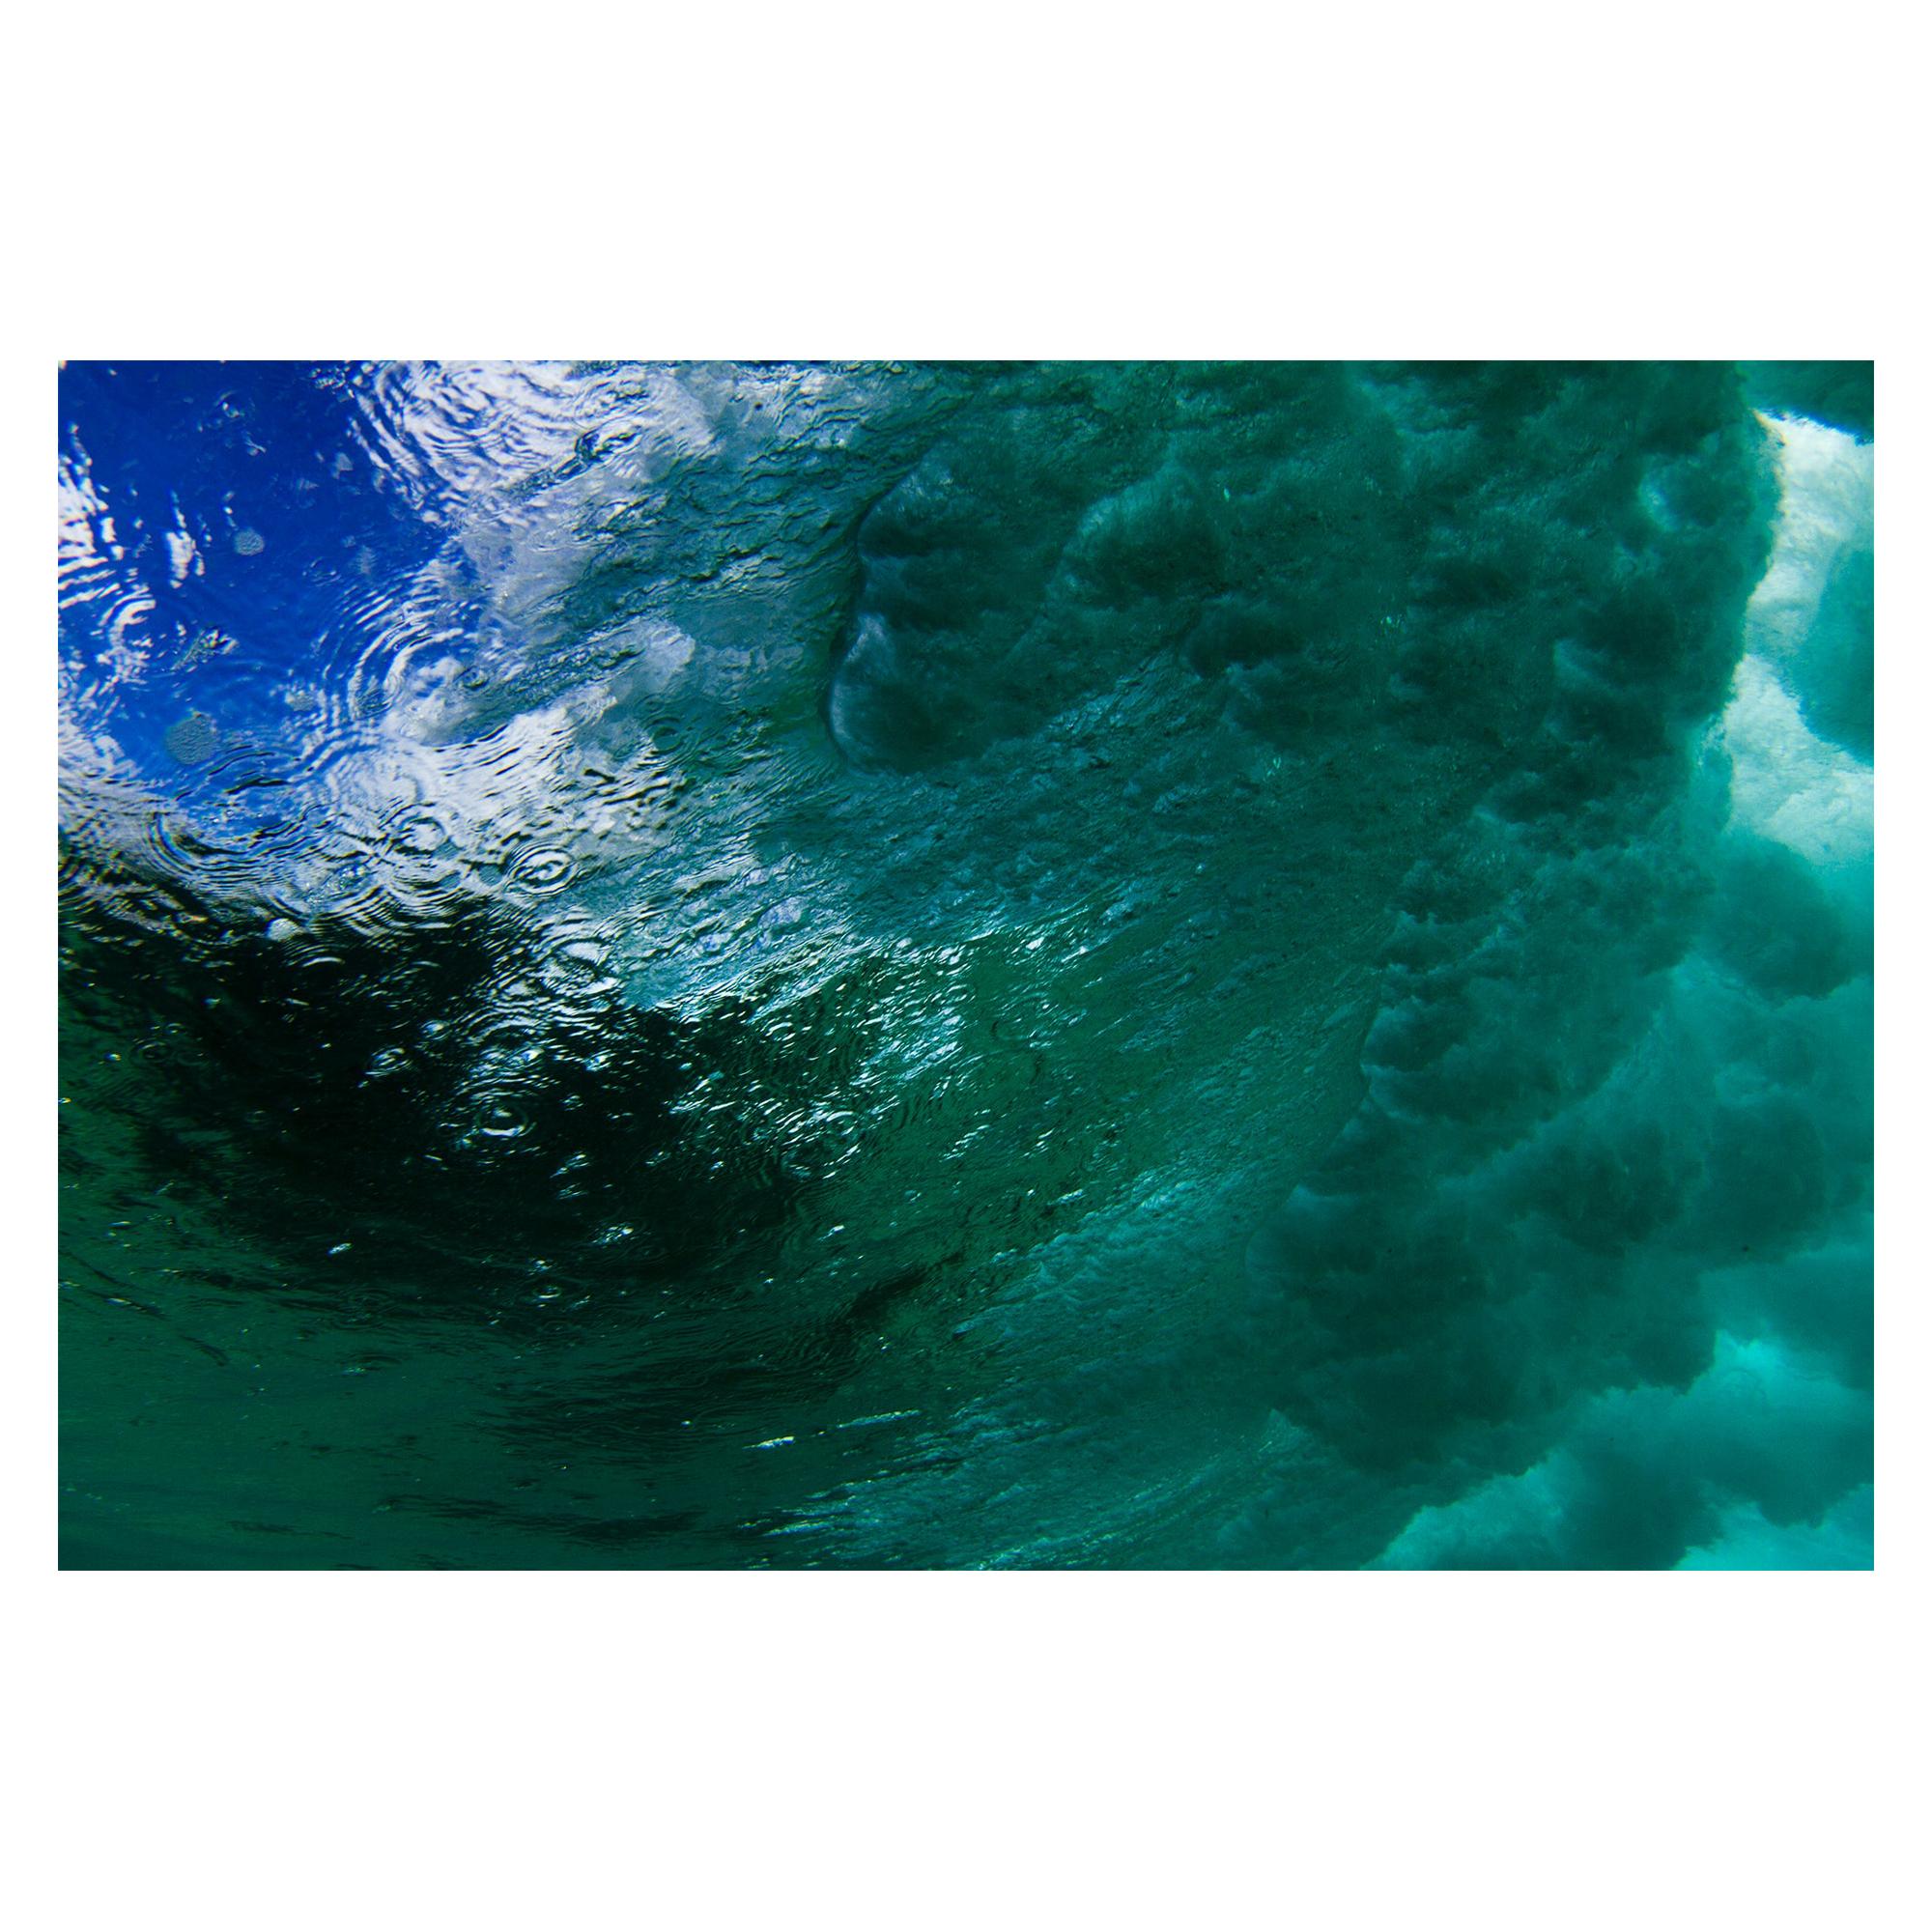 Photographie « Waves 3 », 2017, de la photographe brésilienne Roberta Borges